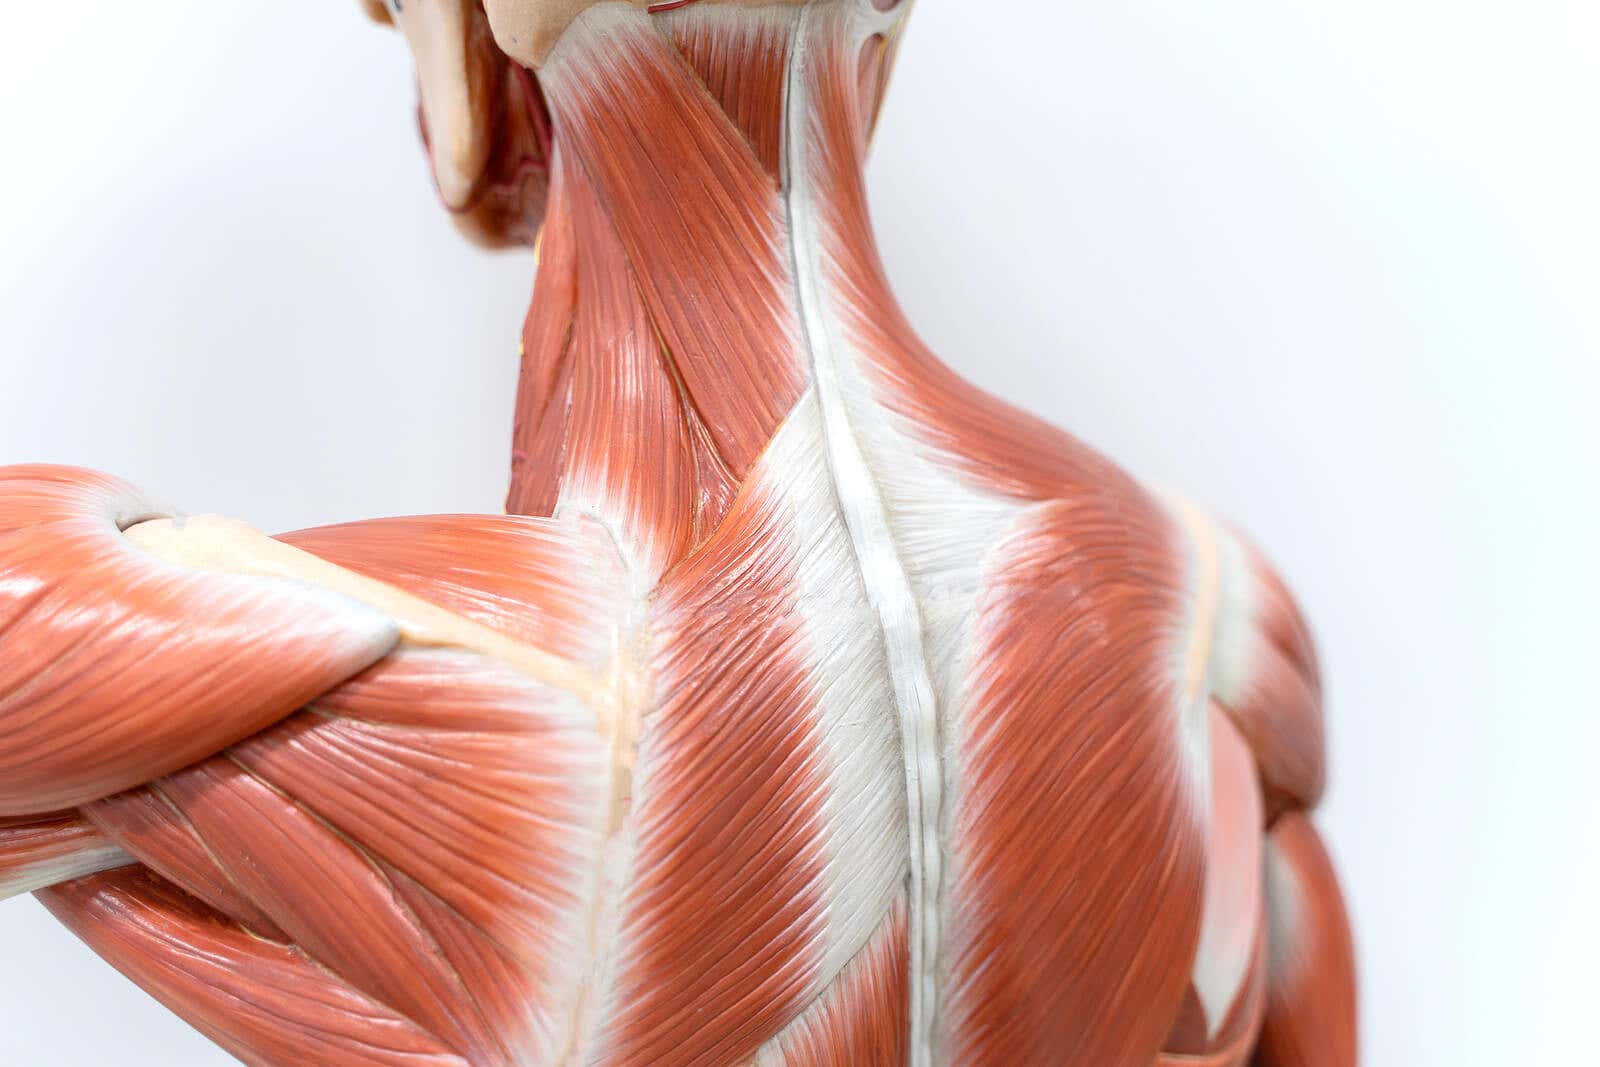 Musculos de la espalda.